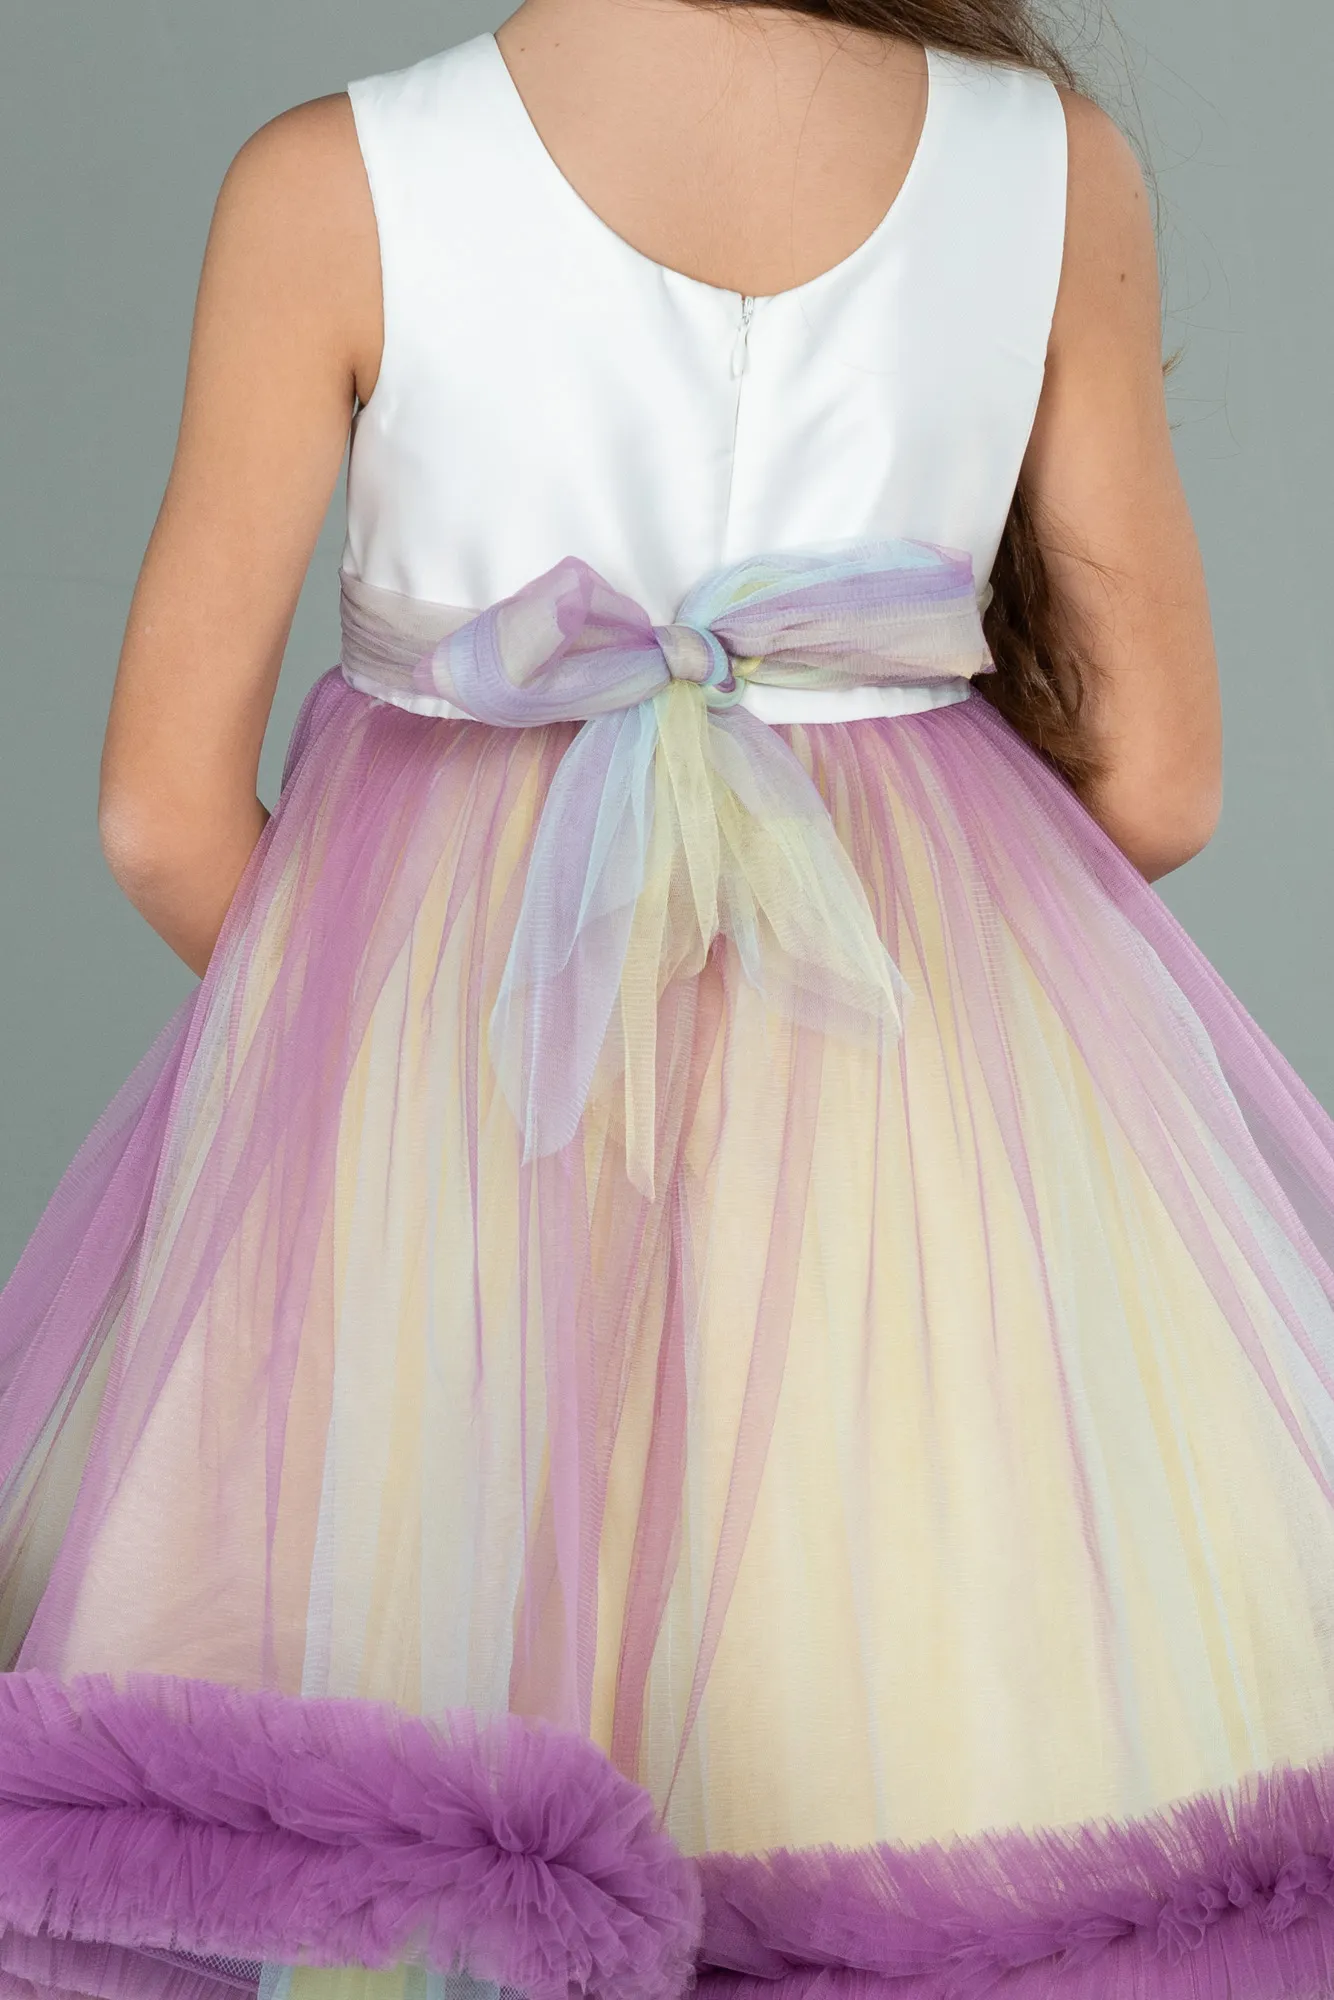 Rinser-Long Girl Dress ABU2154